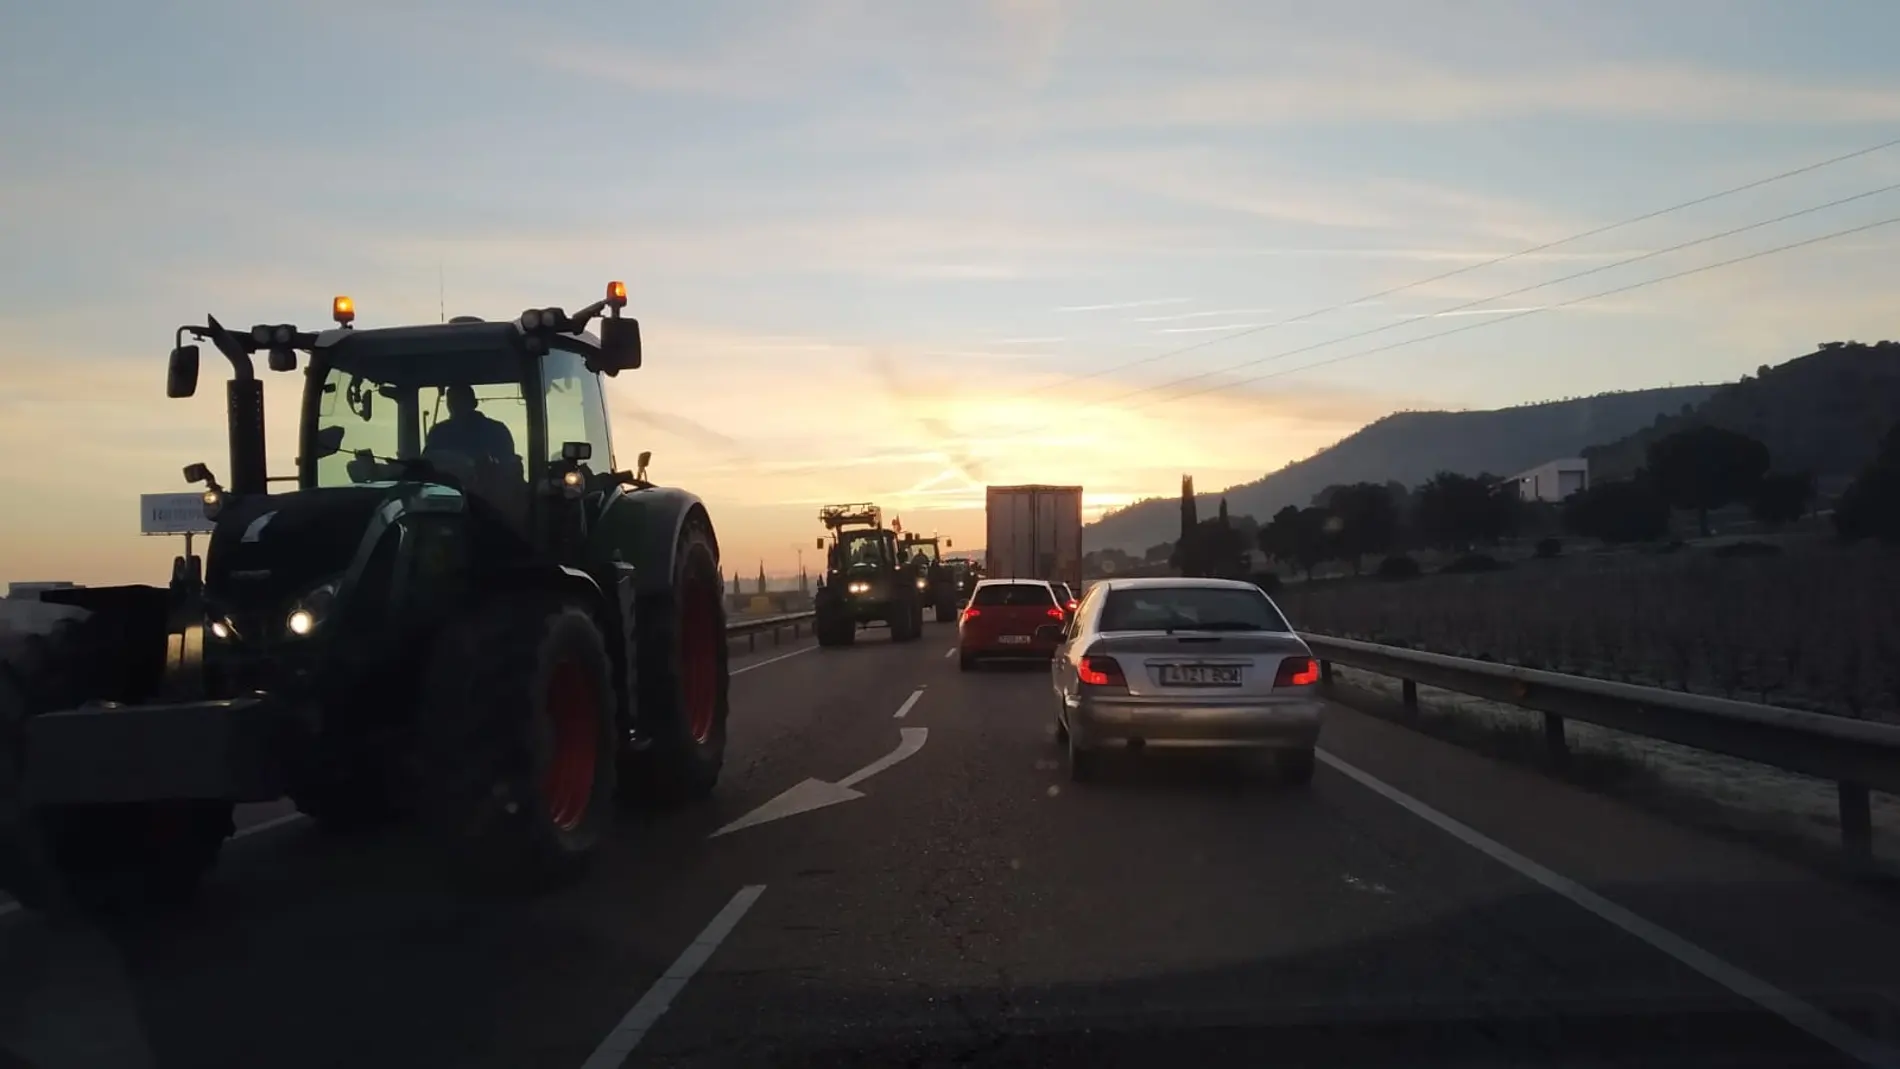 Tractorada en la provincia de Valladolid